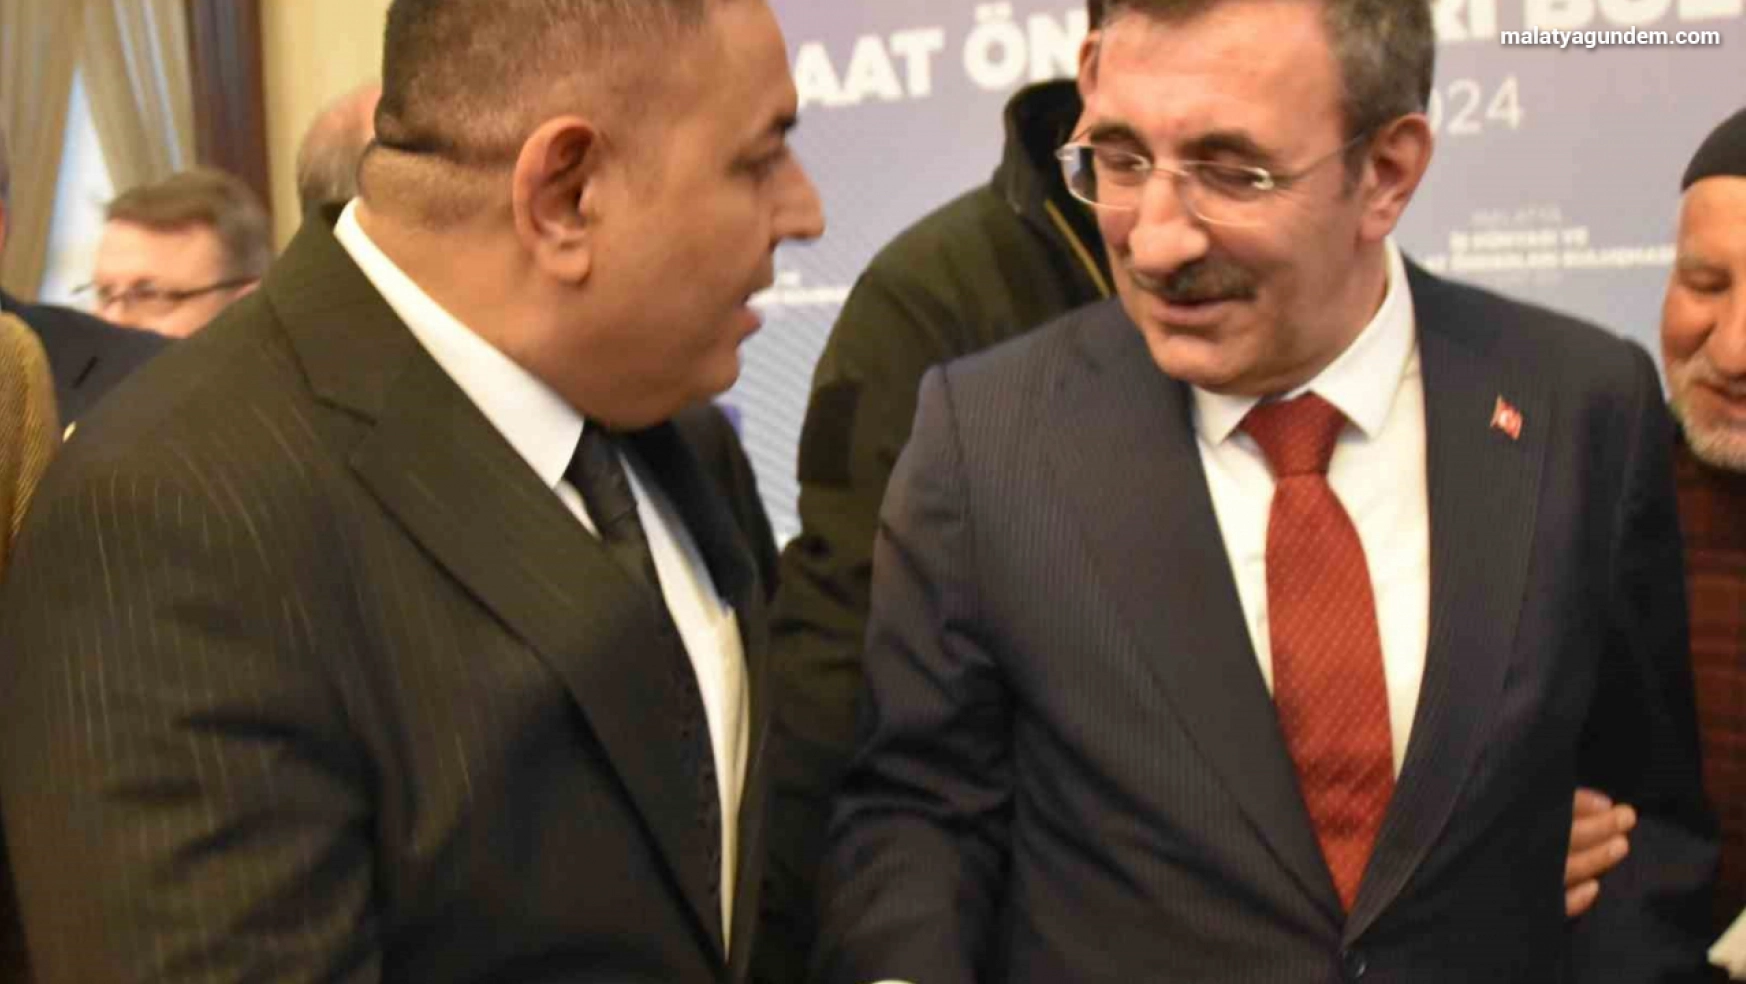 Sadıkoğlu, Malatya'nın taleplerine hassasiyetle yaklaşılmasını istedi